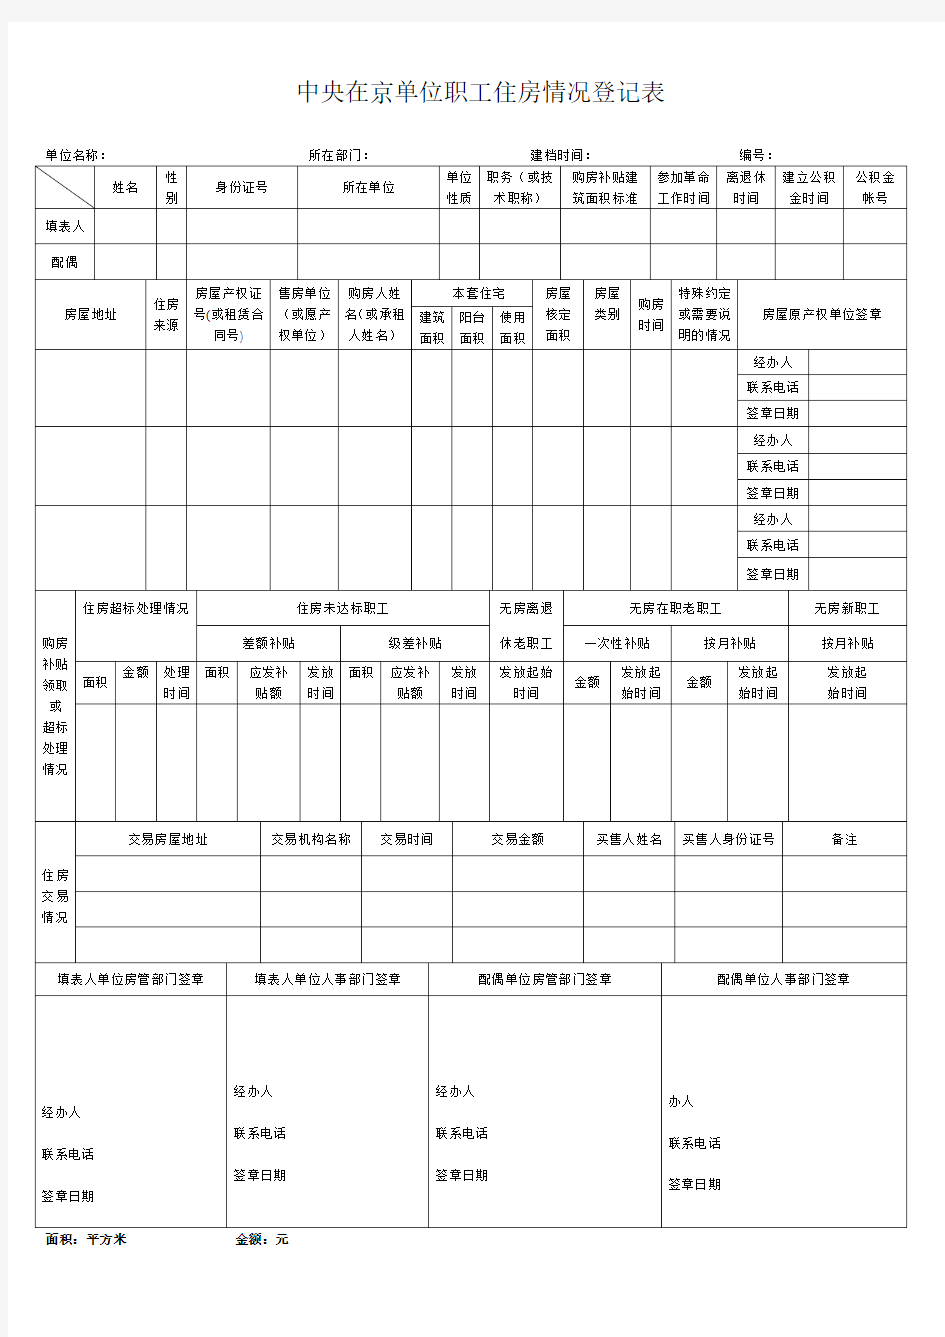 中央在京单位职工住房情况登记表